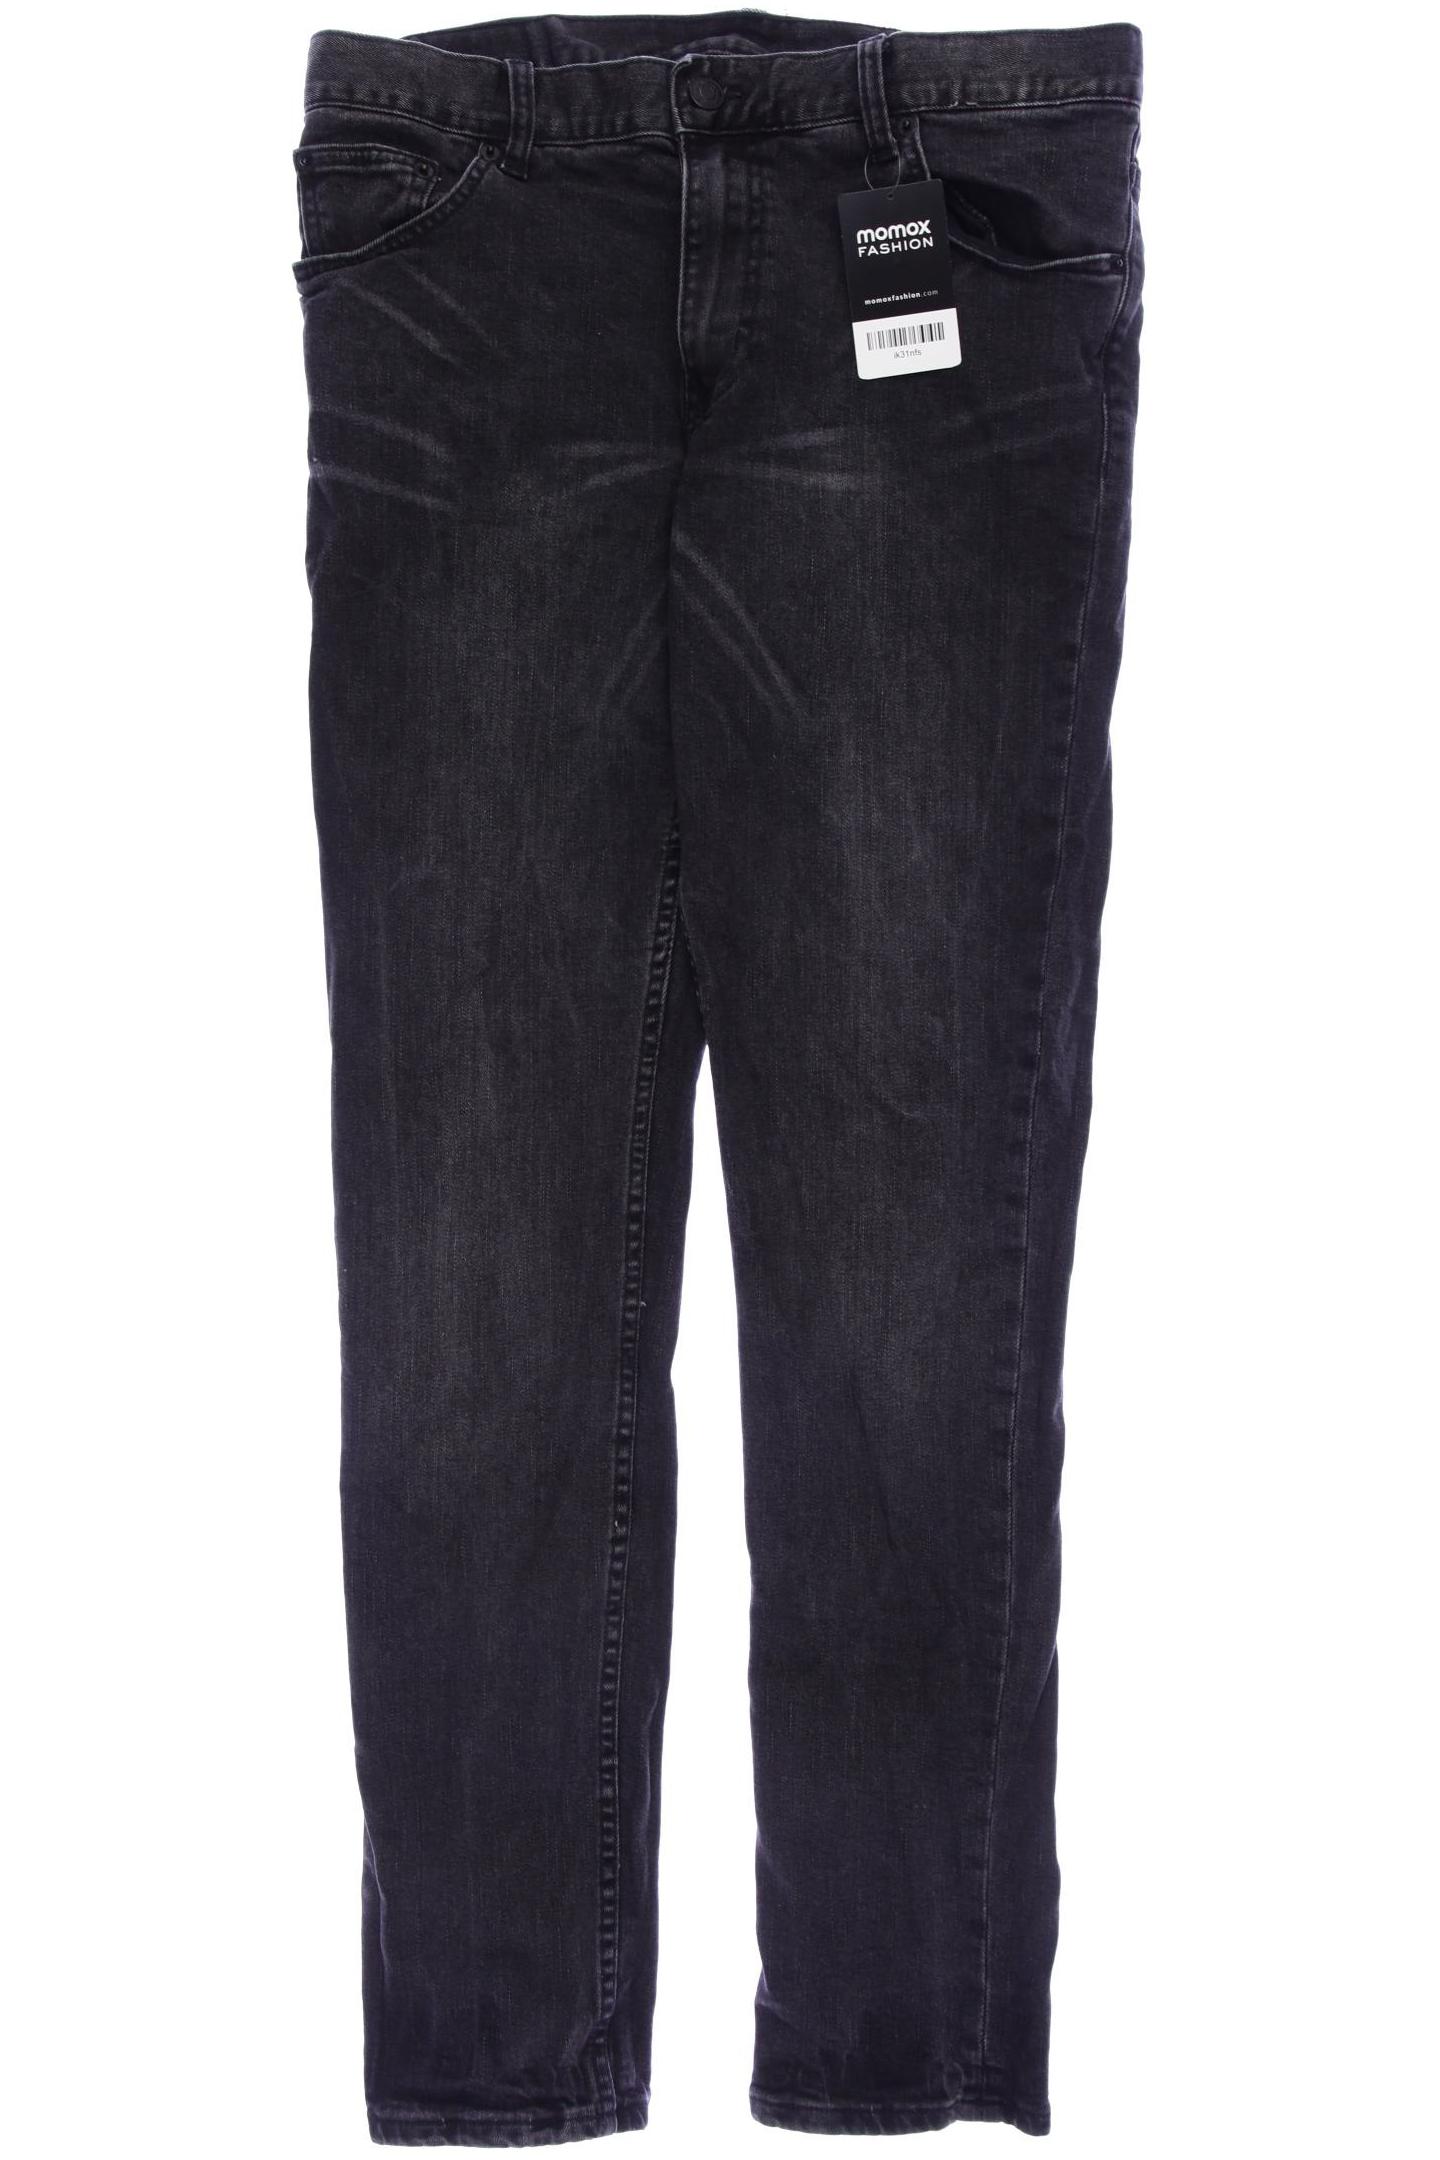 Weekday Herren Jeans, schwarz, Gr. 48 von Weekday